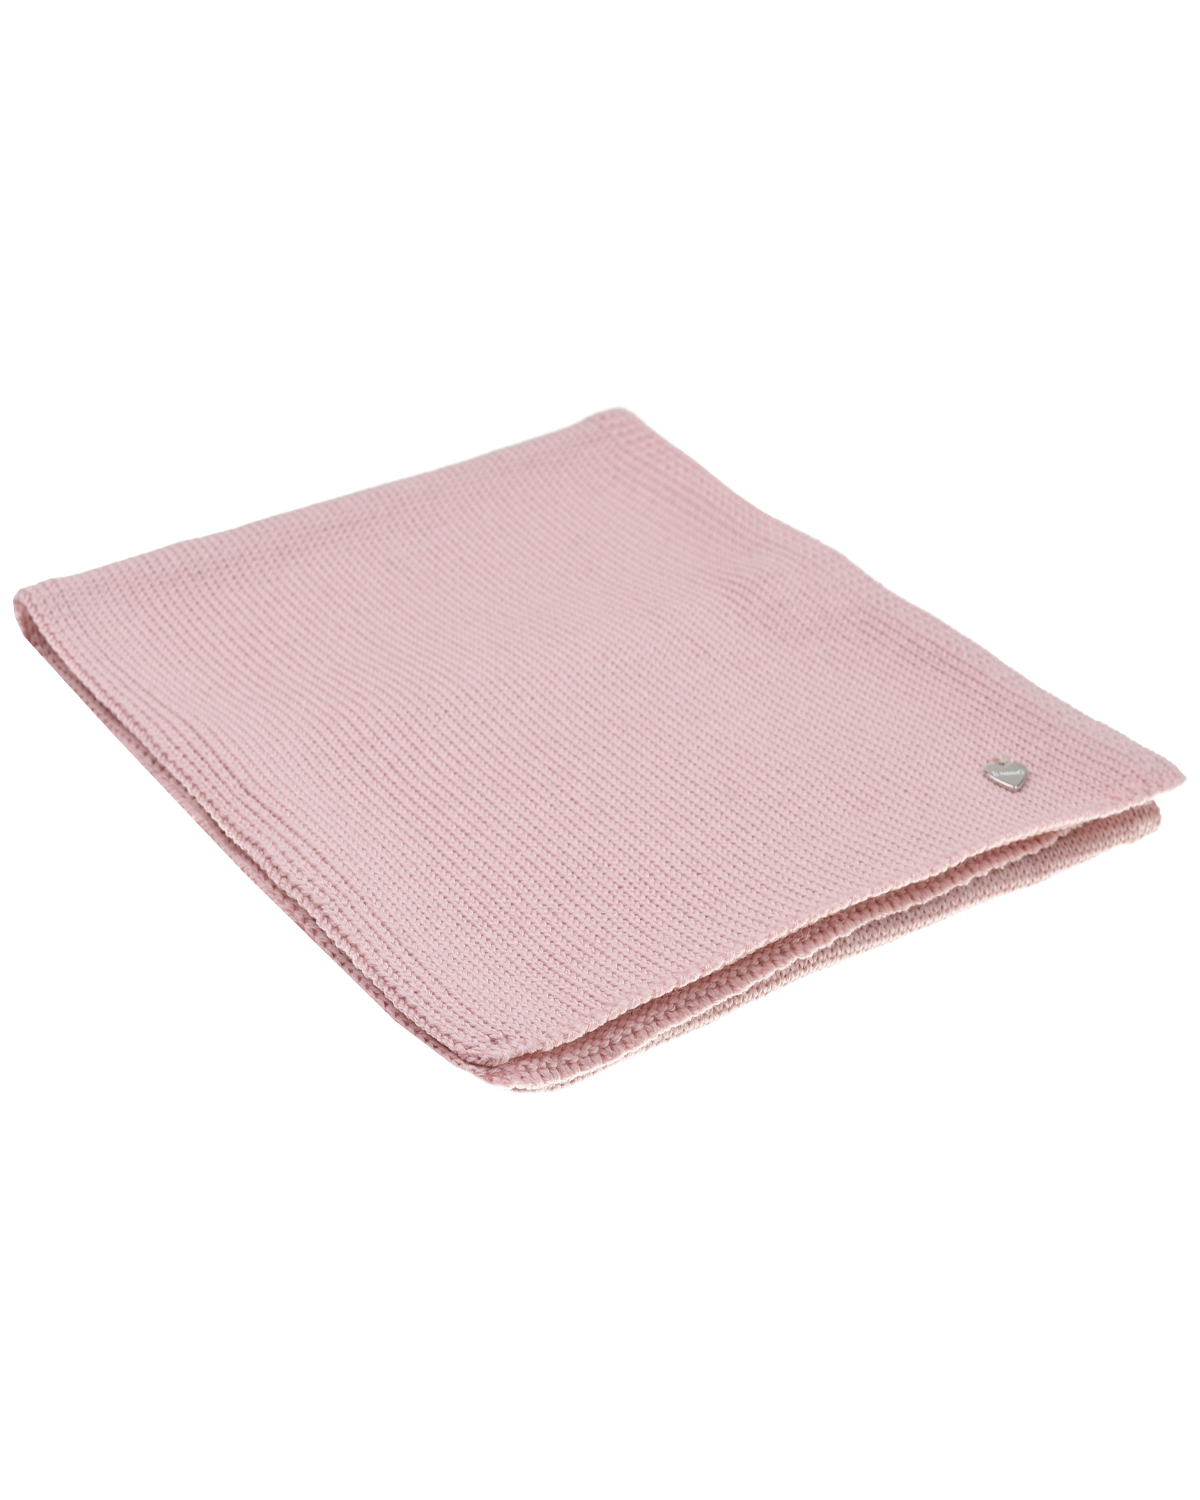 Розовый шарф, 155x25 см Il Trenino детский, размер unica - фото 1